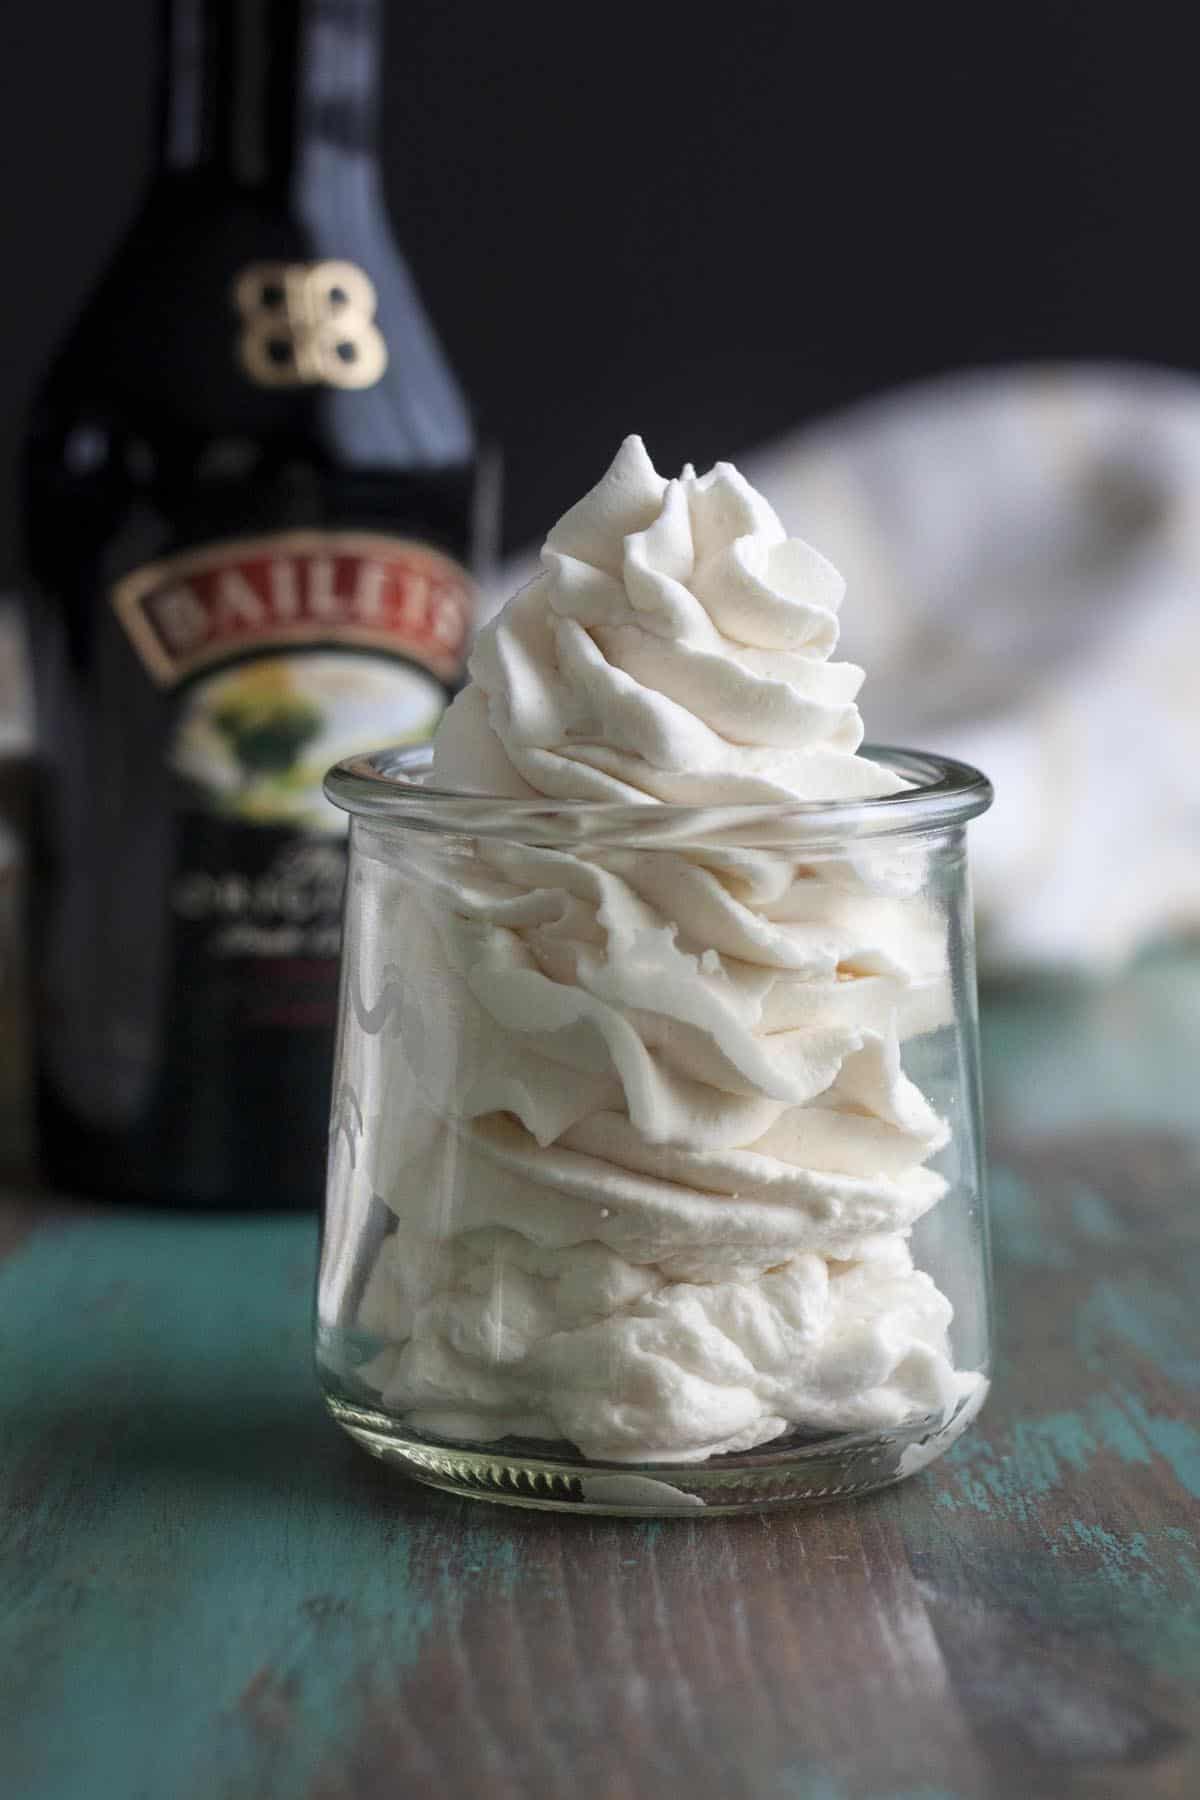 Homemade Irish cream whipped cream in a jar